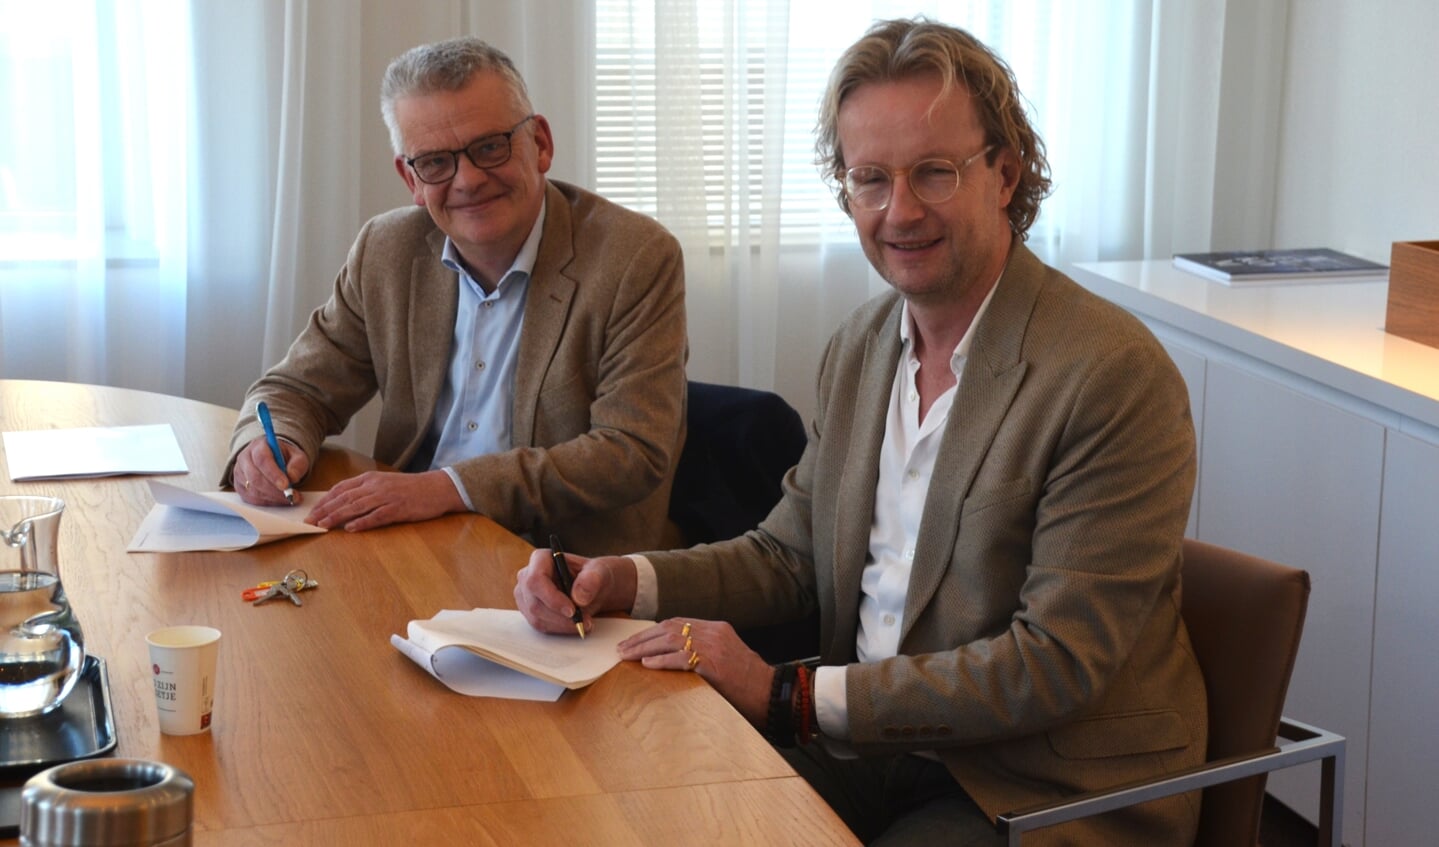 Johan Klerks (r.) en wethouder Daan Binnendijk ondertekenen de officiële overdracht van het voormalige Informatiecentrum A4.